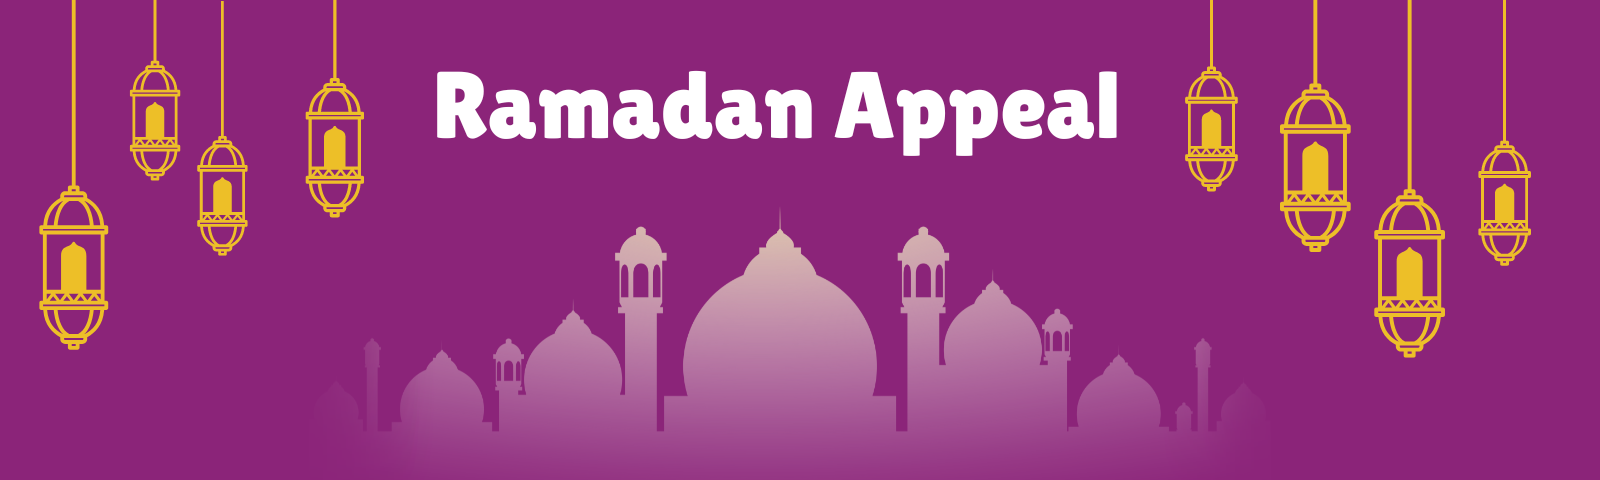 Ramadan appeal